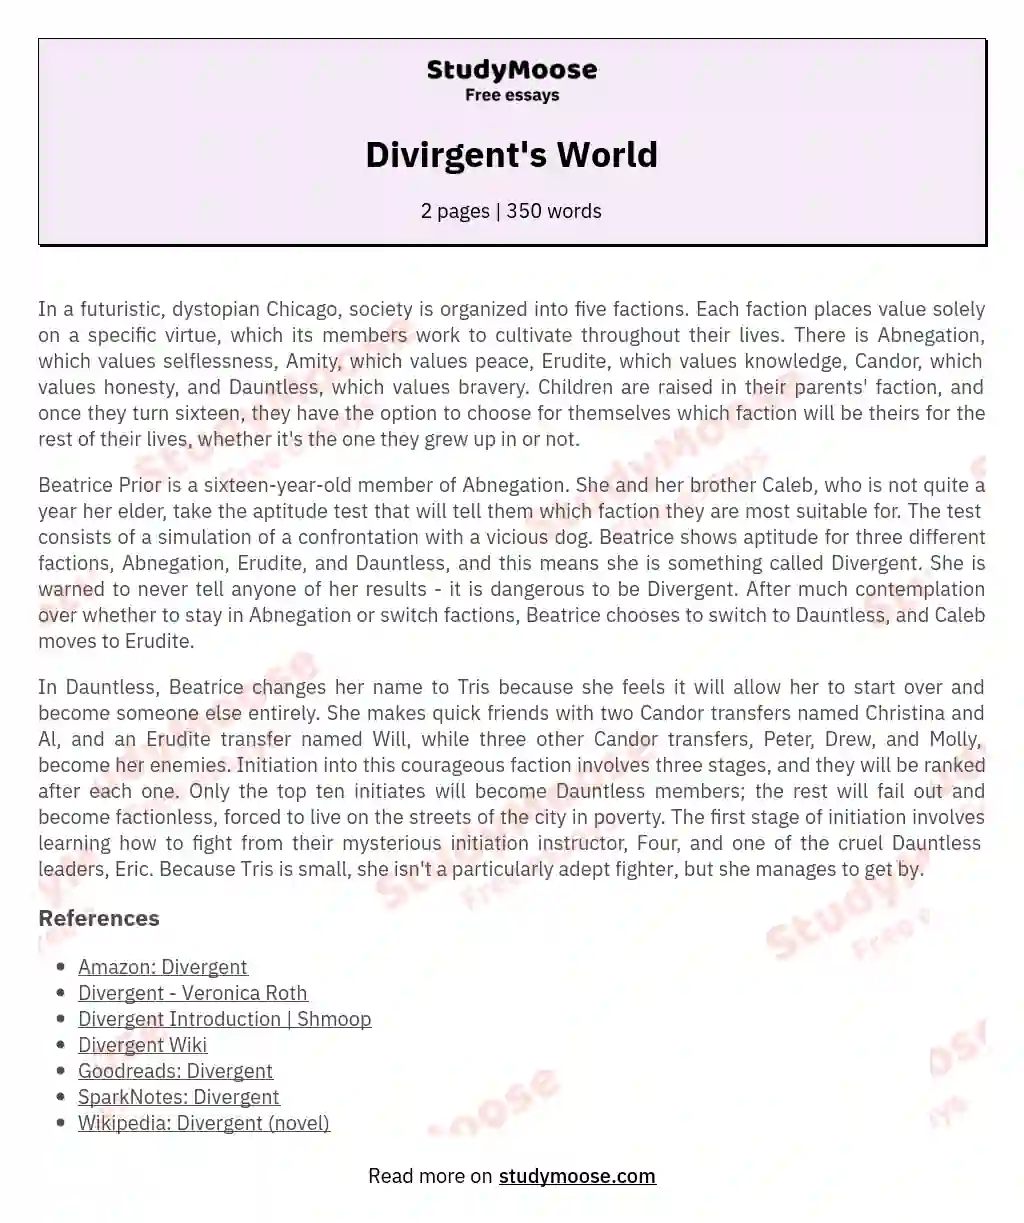 Divirgent's World